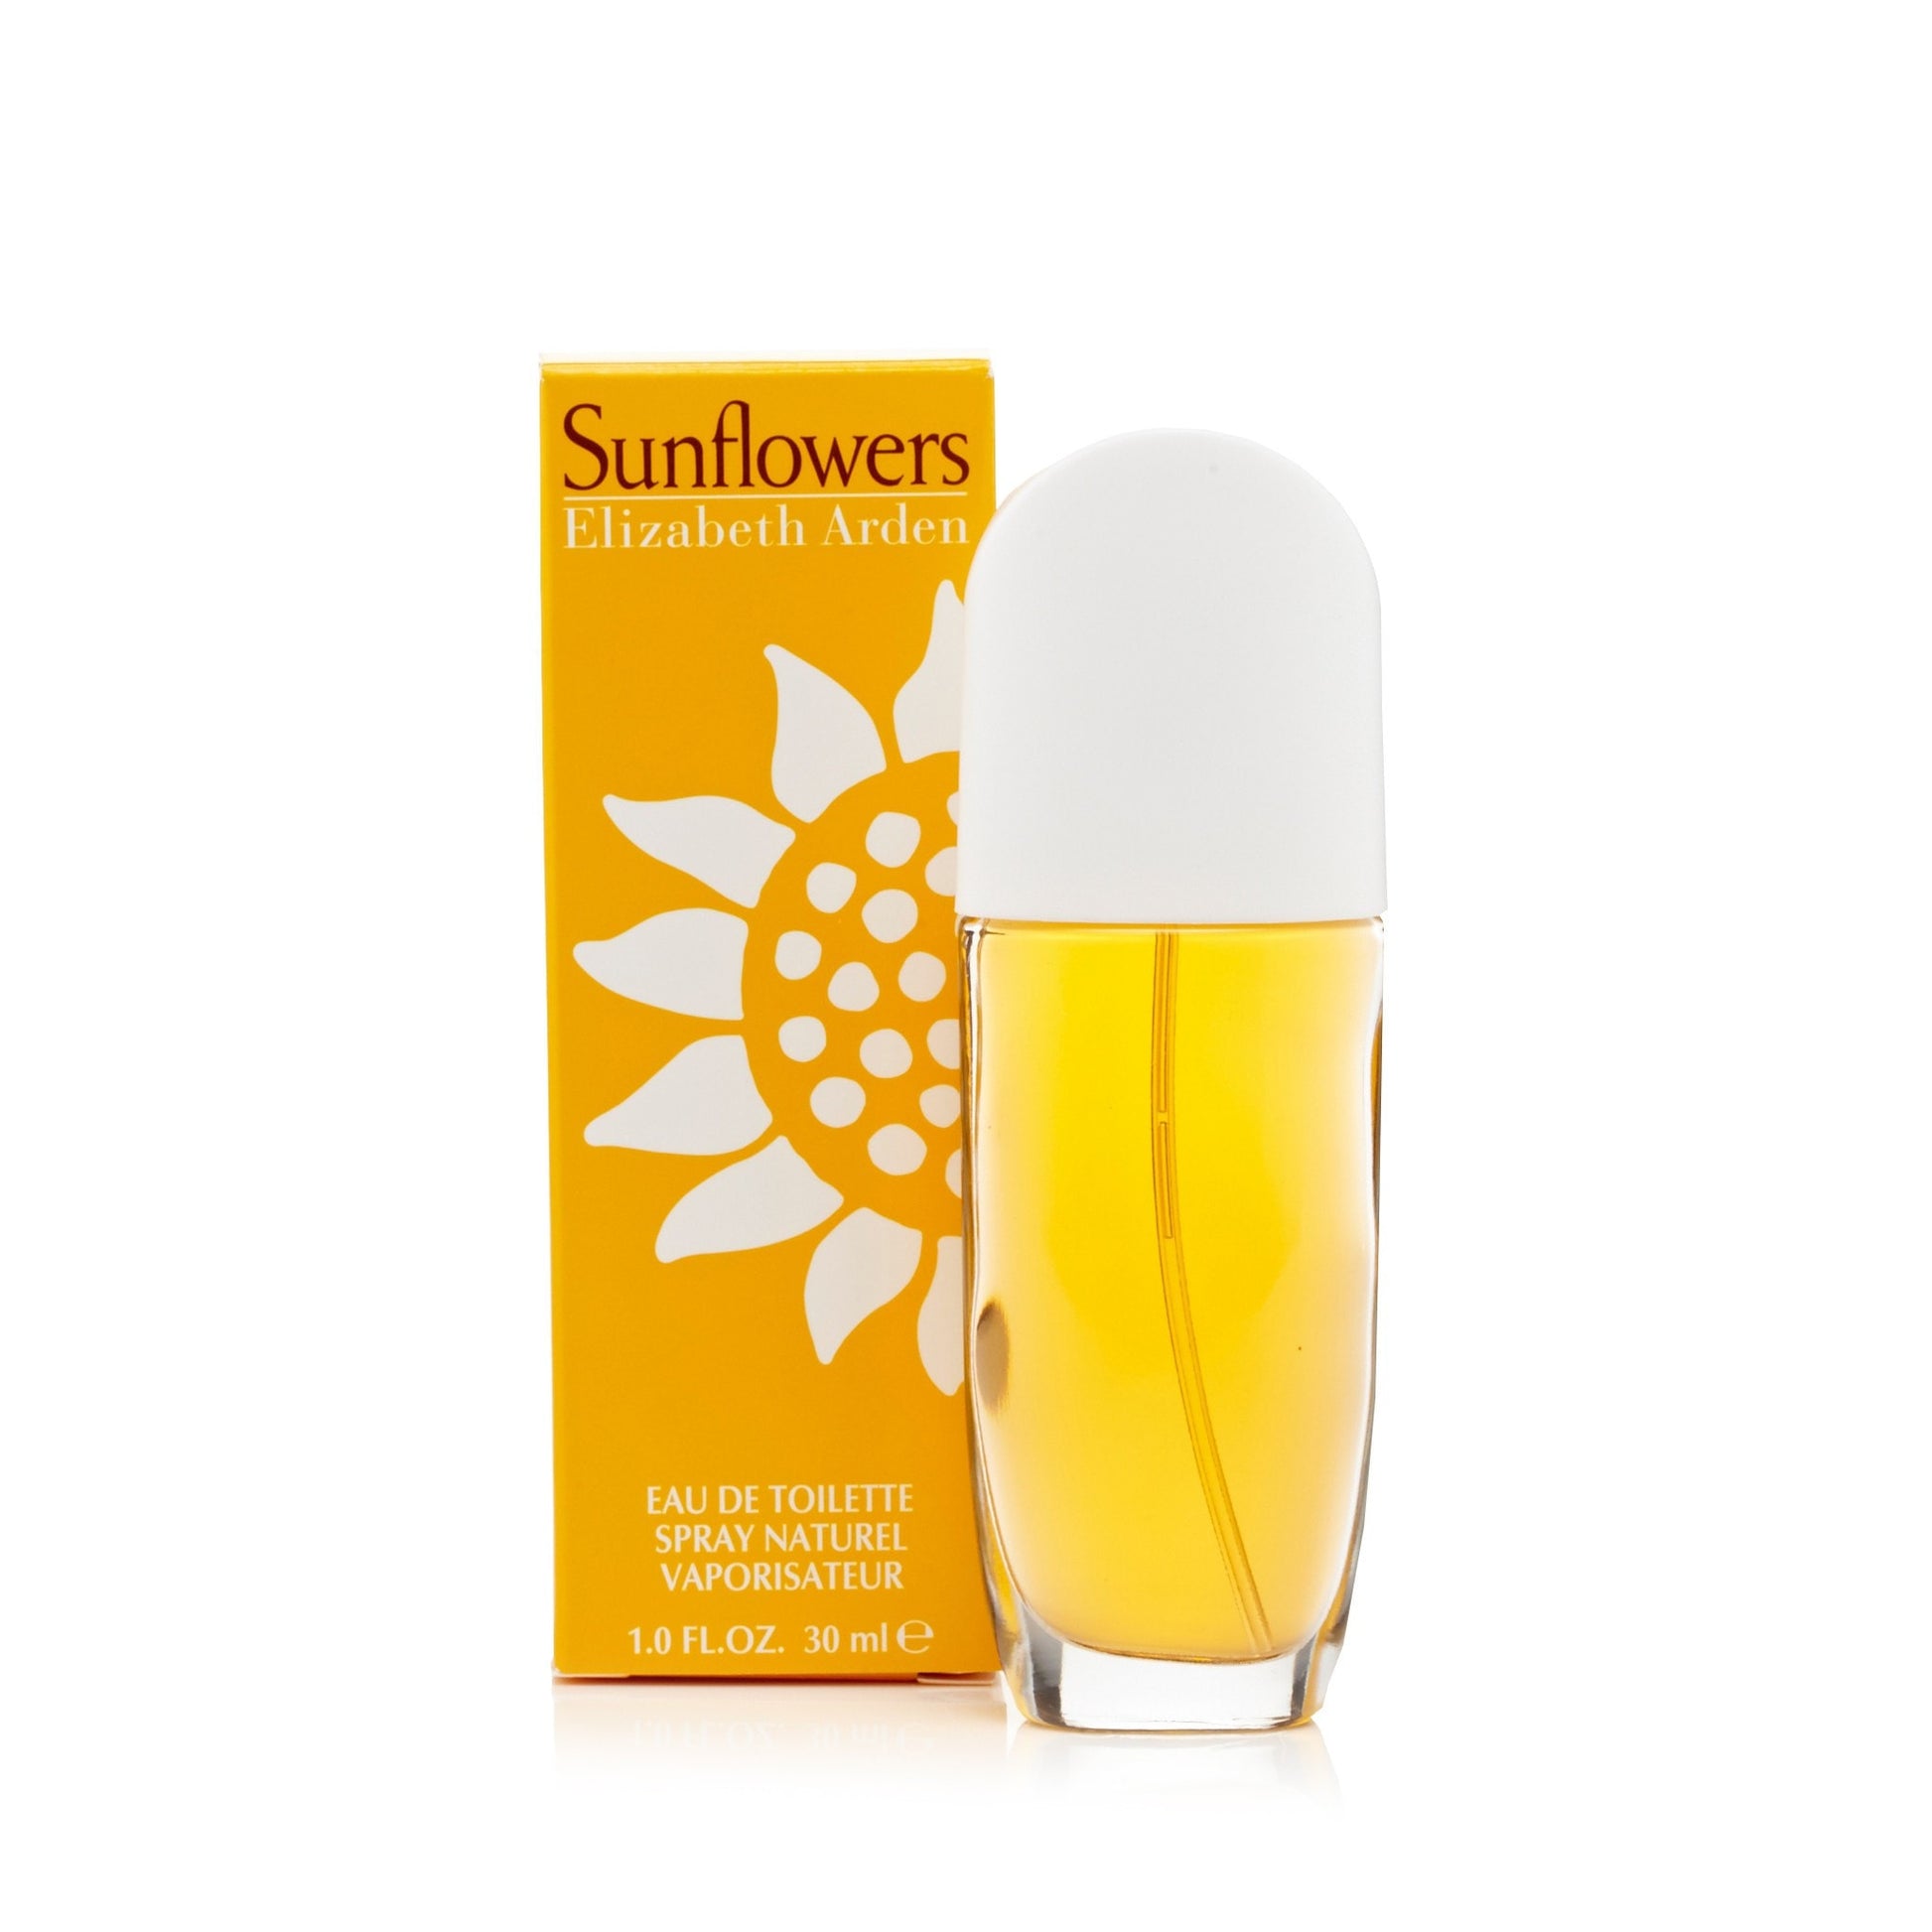 Sunflowers Eau de Toilette Spray for Women by Elizabeth Arden 1.0 oz. Click to open in modal